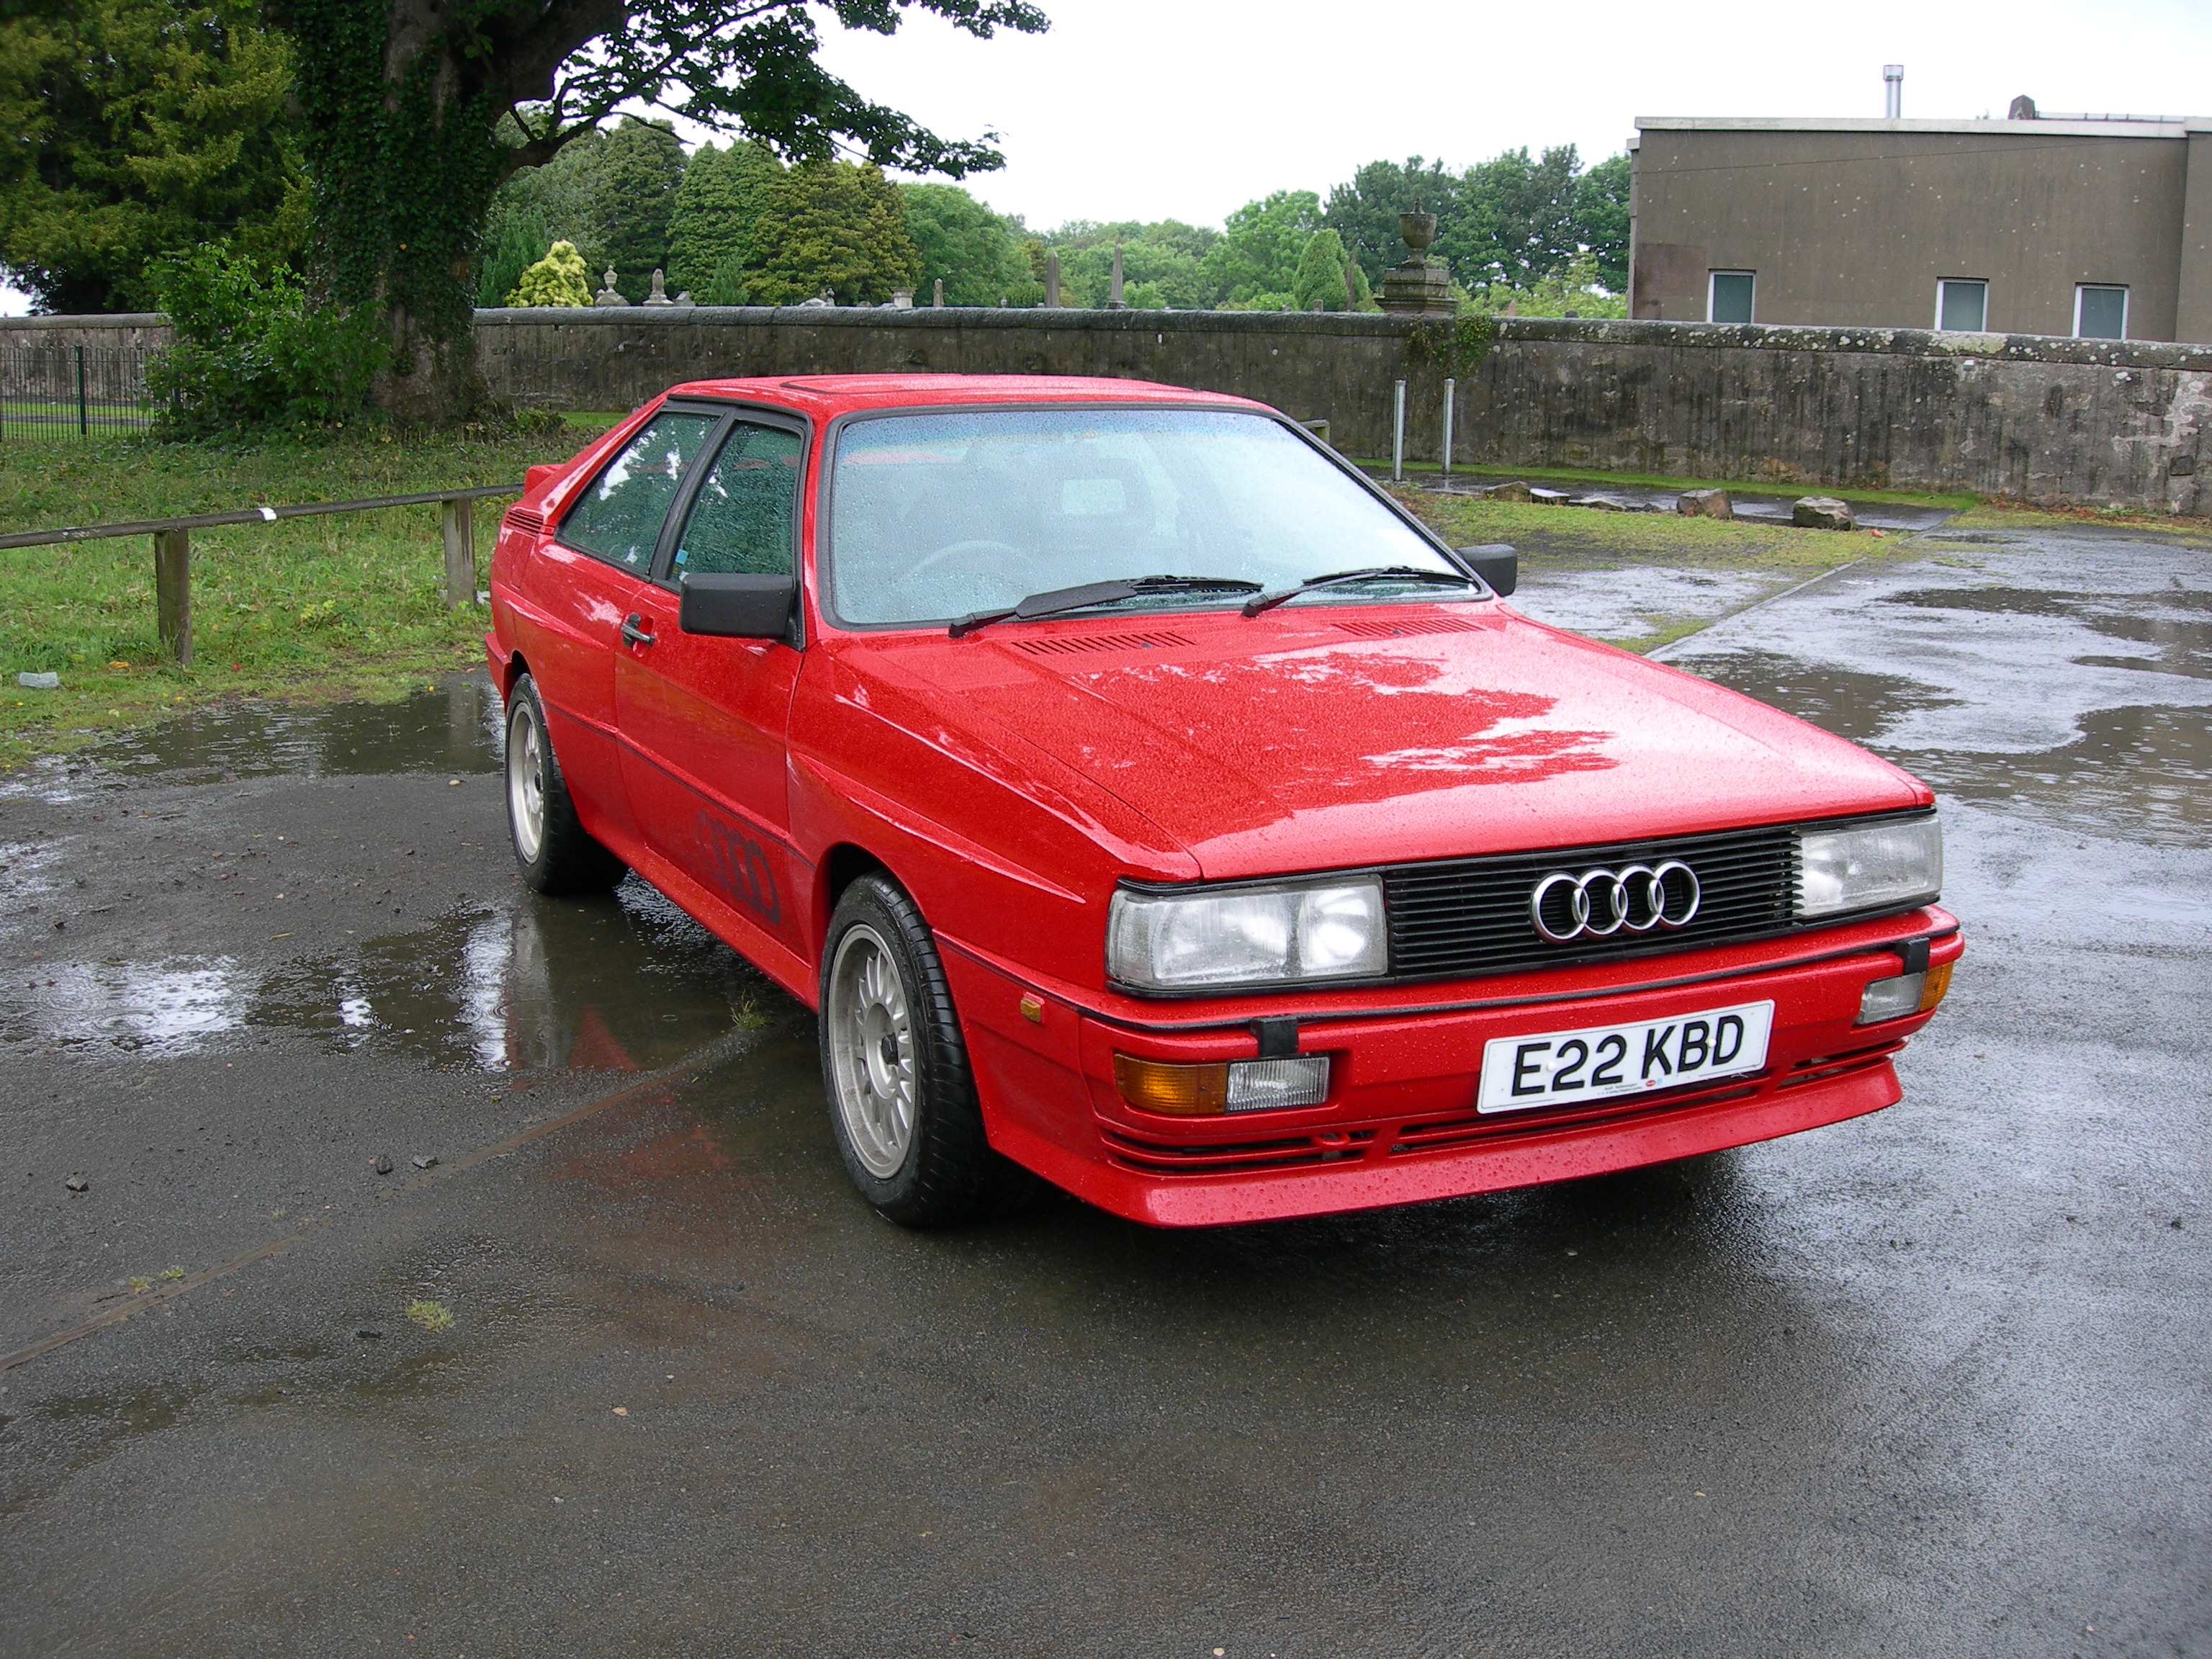 1987 Audi Quattro Turbo